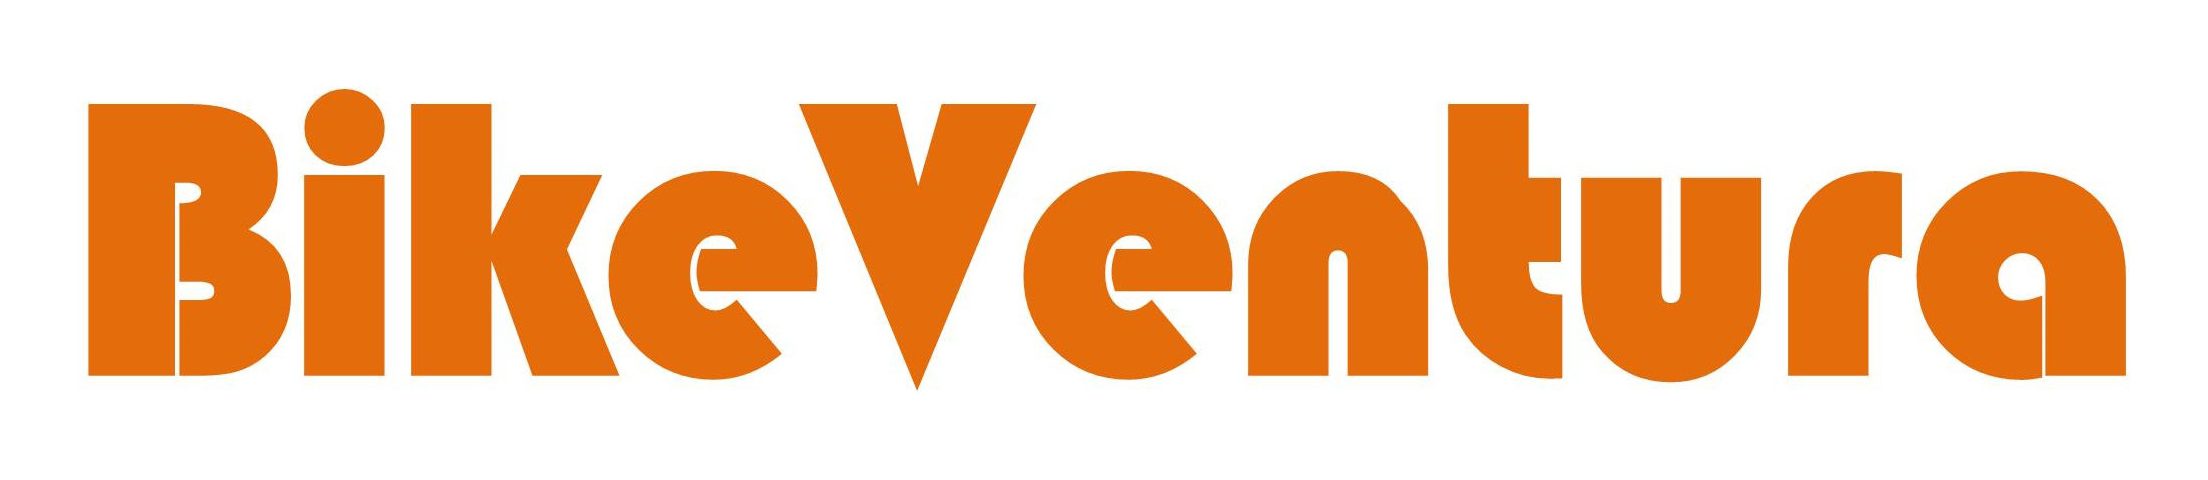 BikeVentura logo-margin